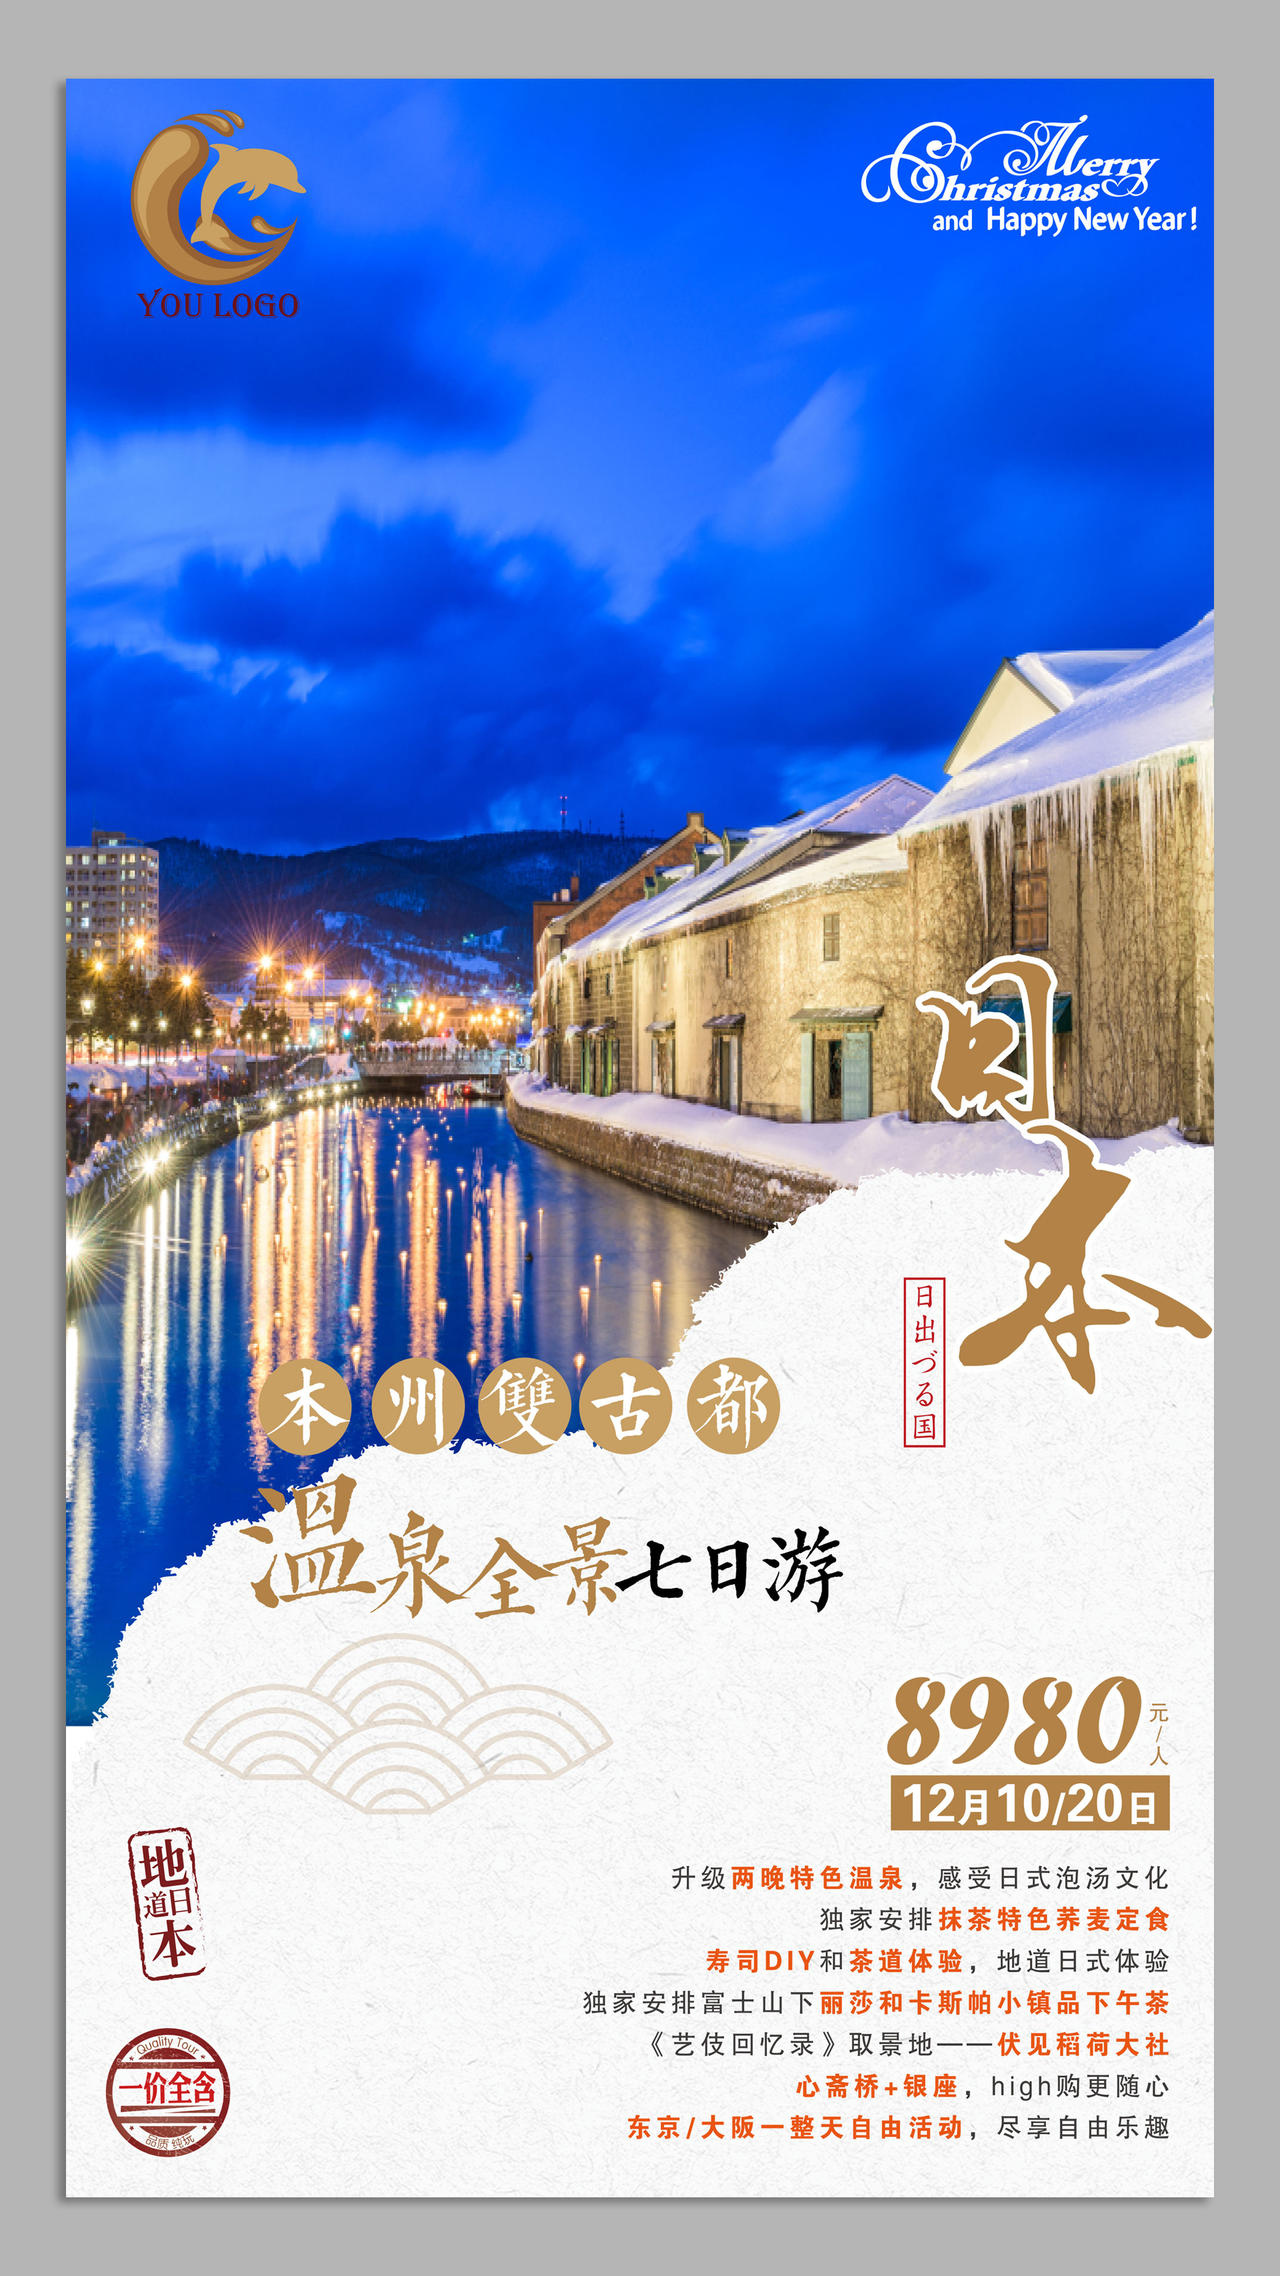 日本北海道故名都旅游海报设计